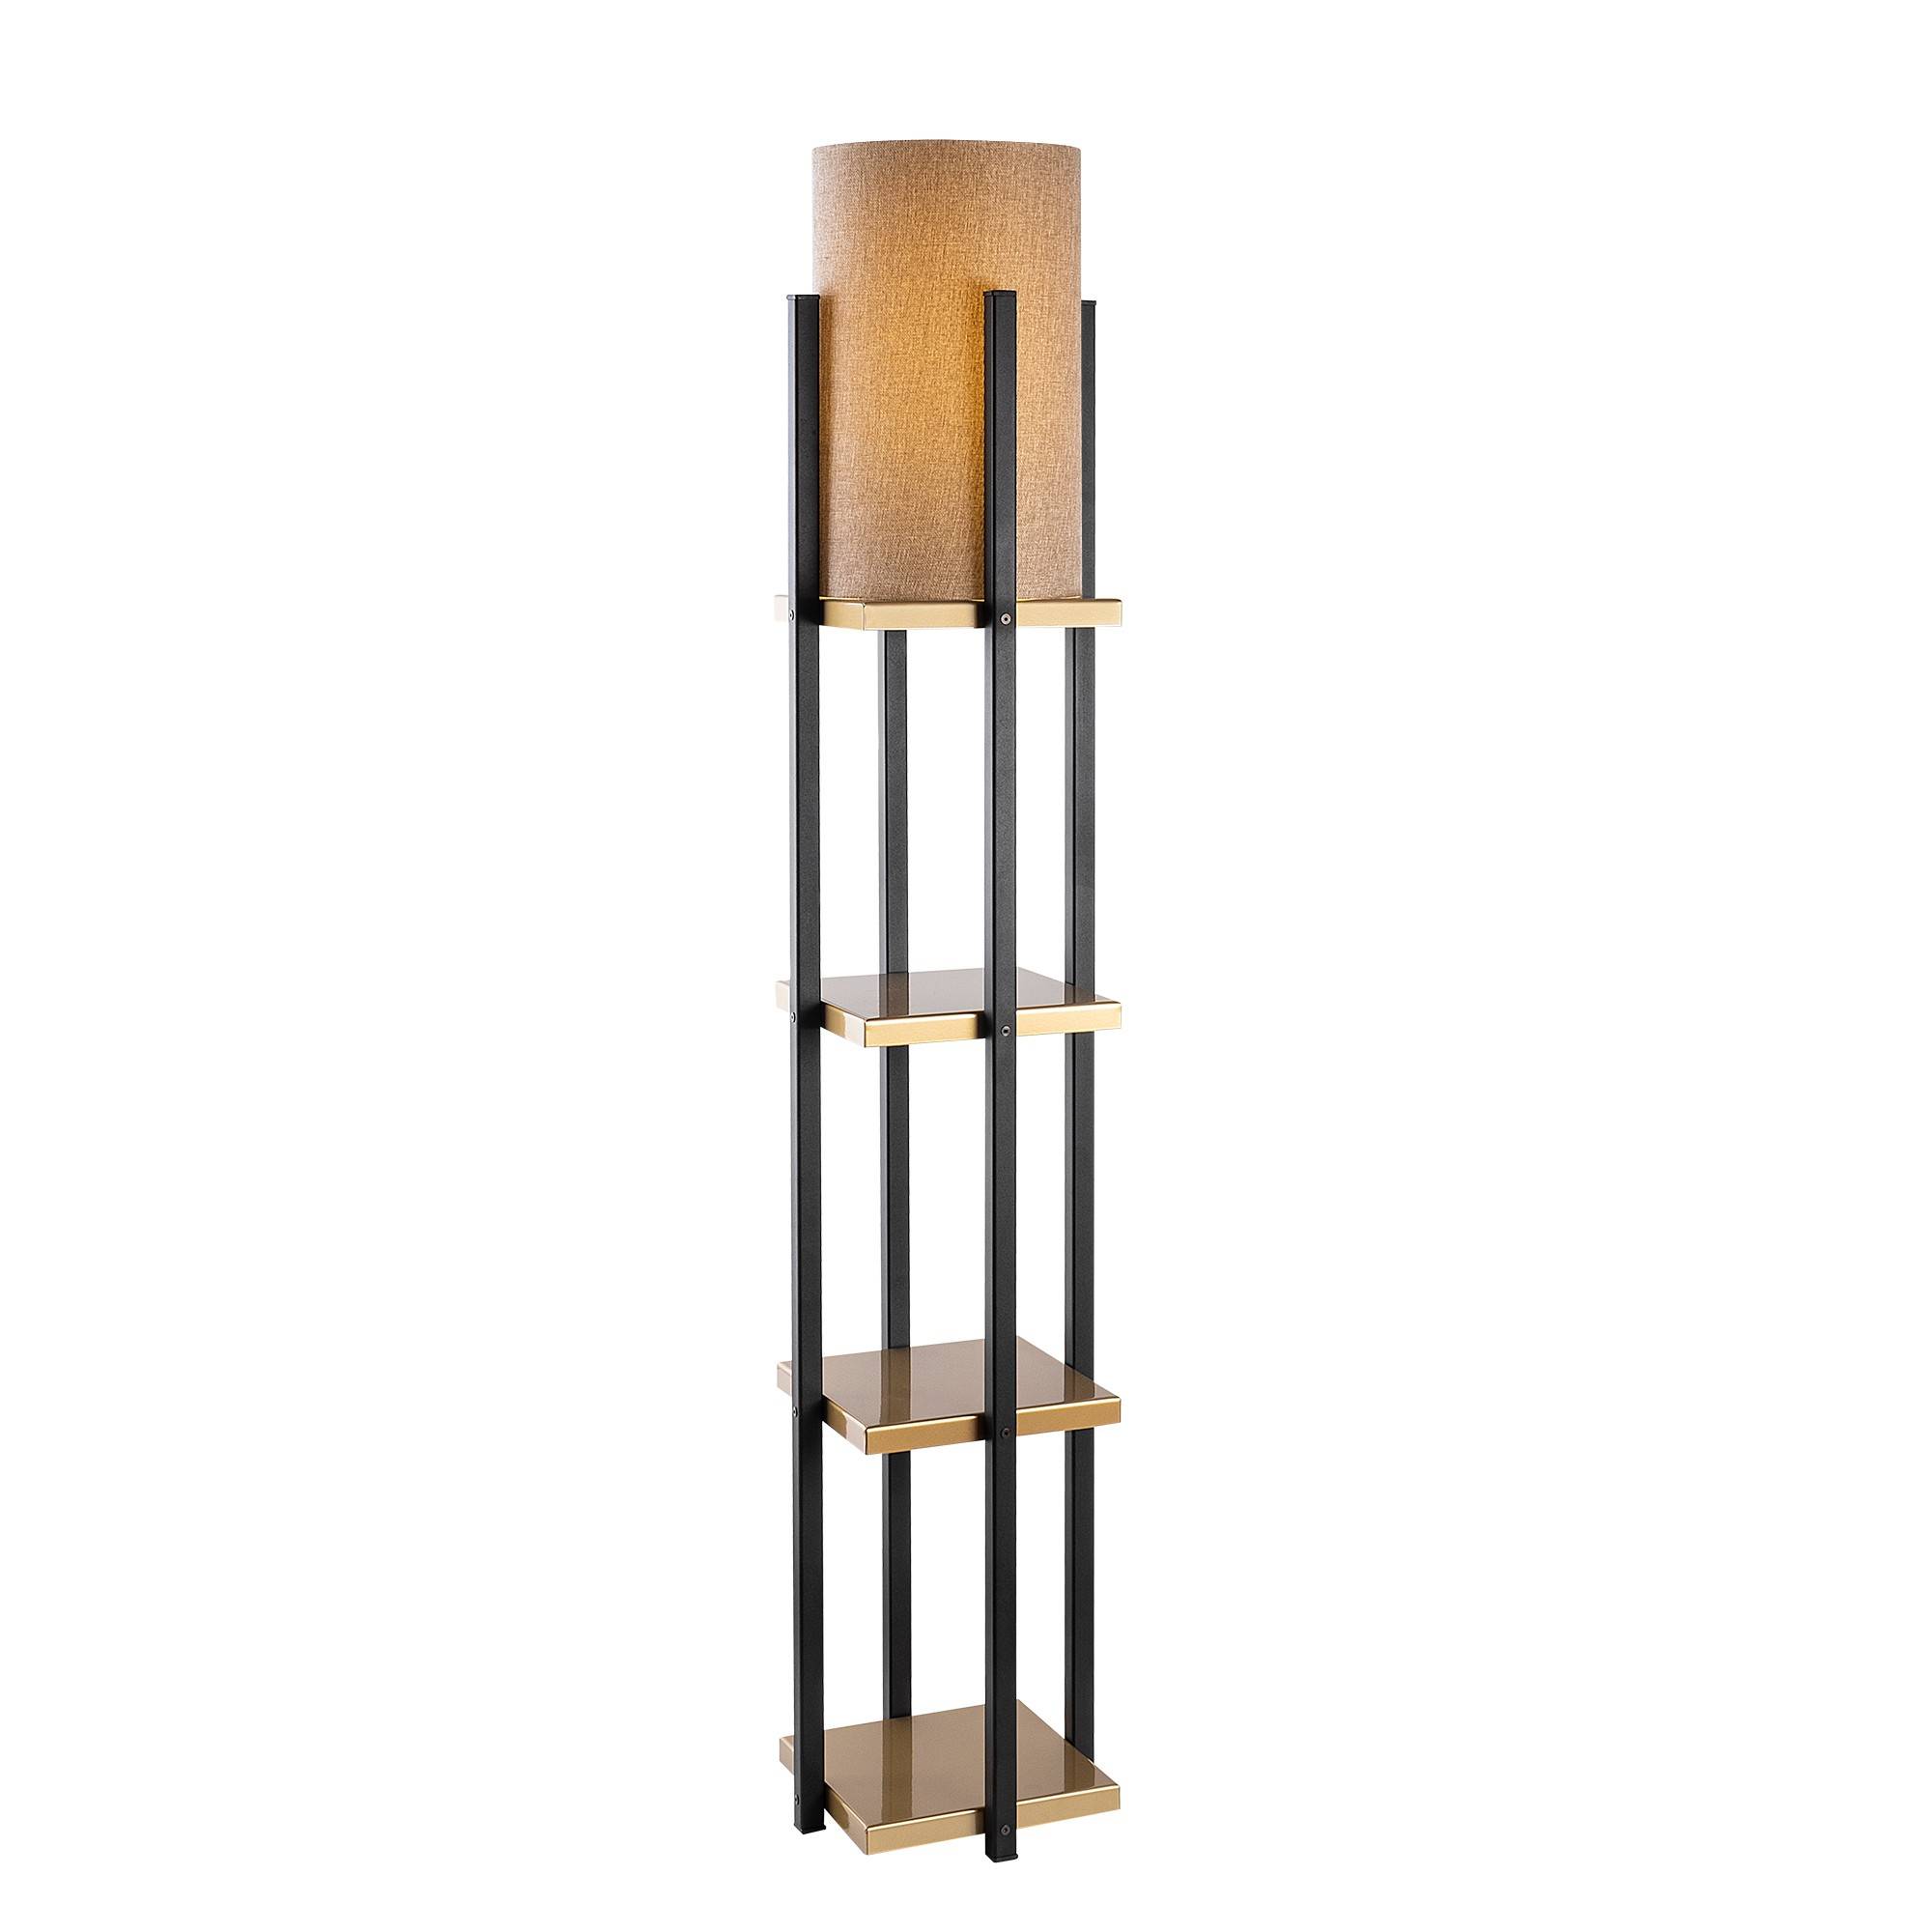 Ulkoda 3-plank combinatie lamp H130cm Zwart en Goud Metaal Bruin Wit Stof